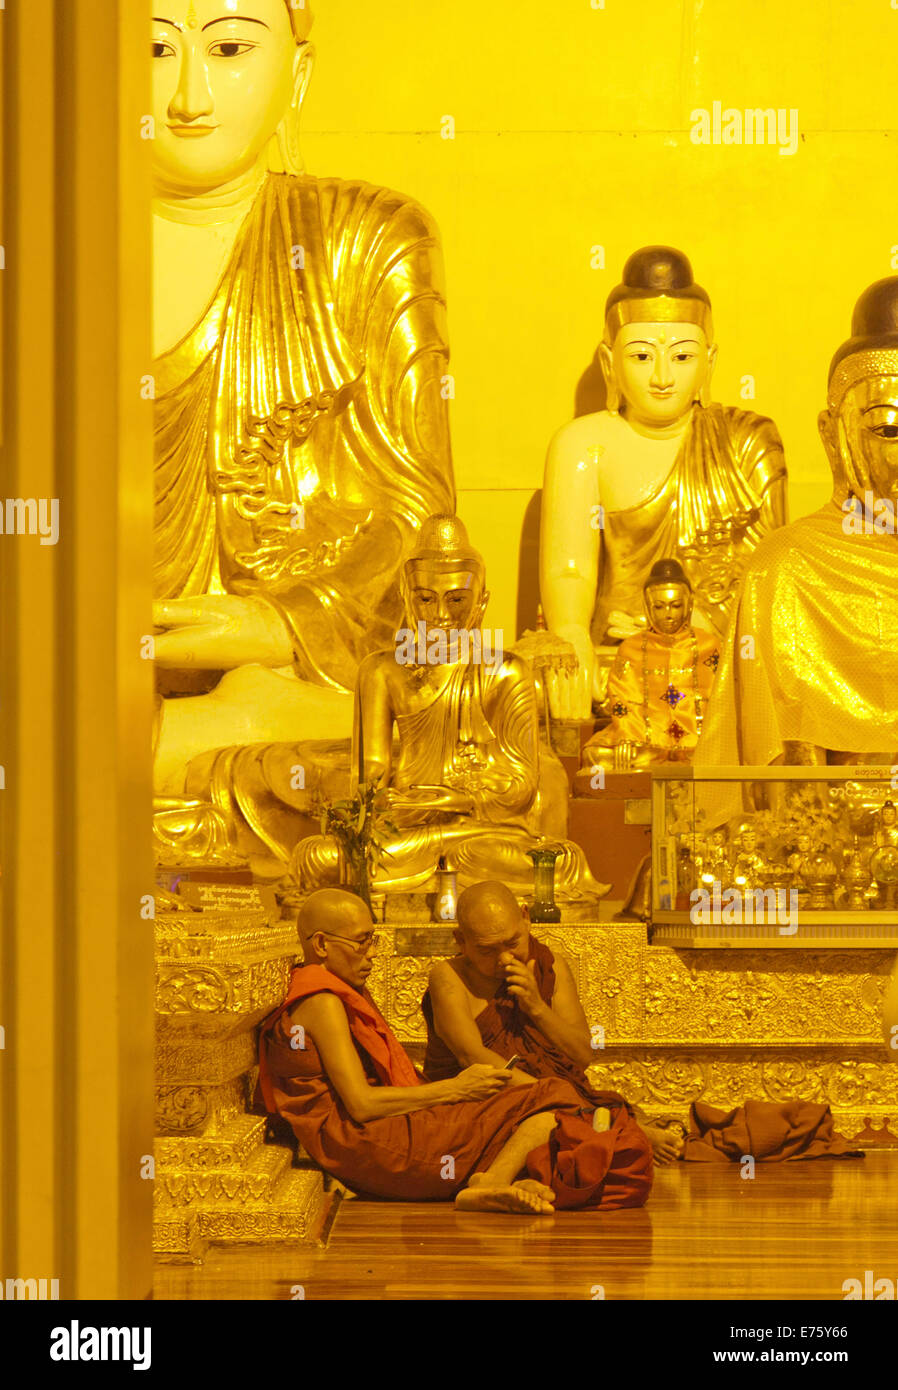 Two Buddhist monks with a mobile phone, Shwedagon Pagoda, Yangon, Myanmar Stock Photo